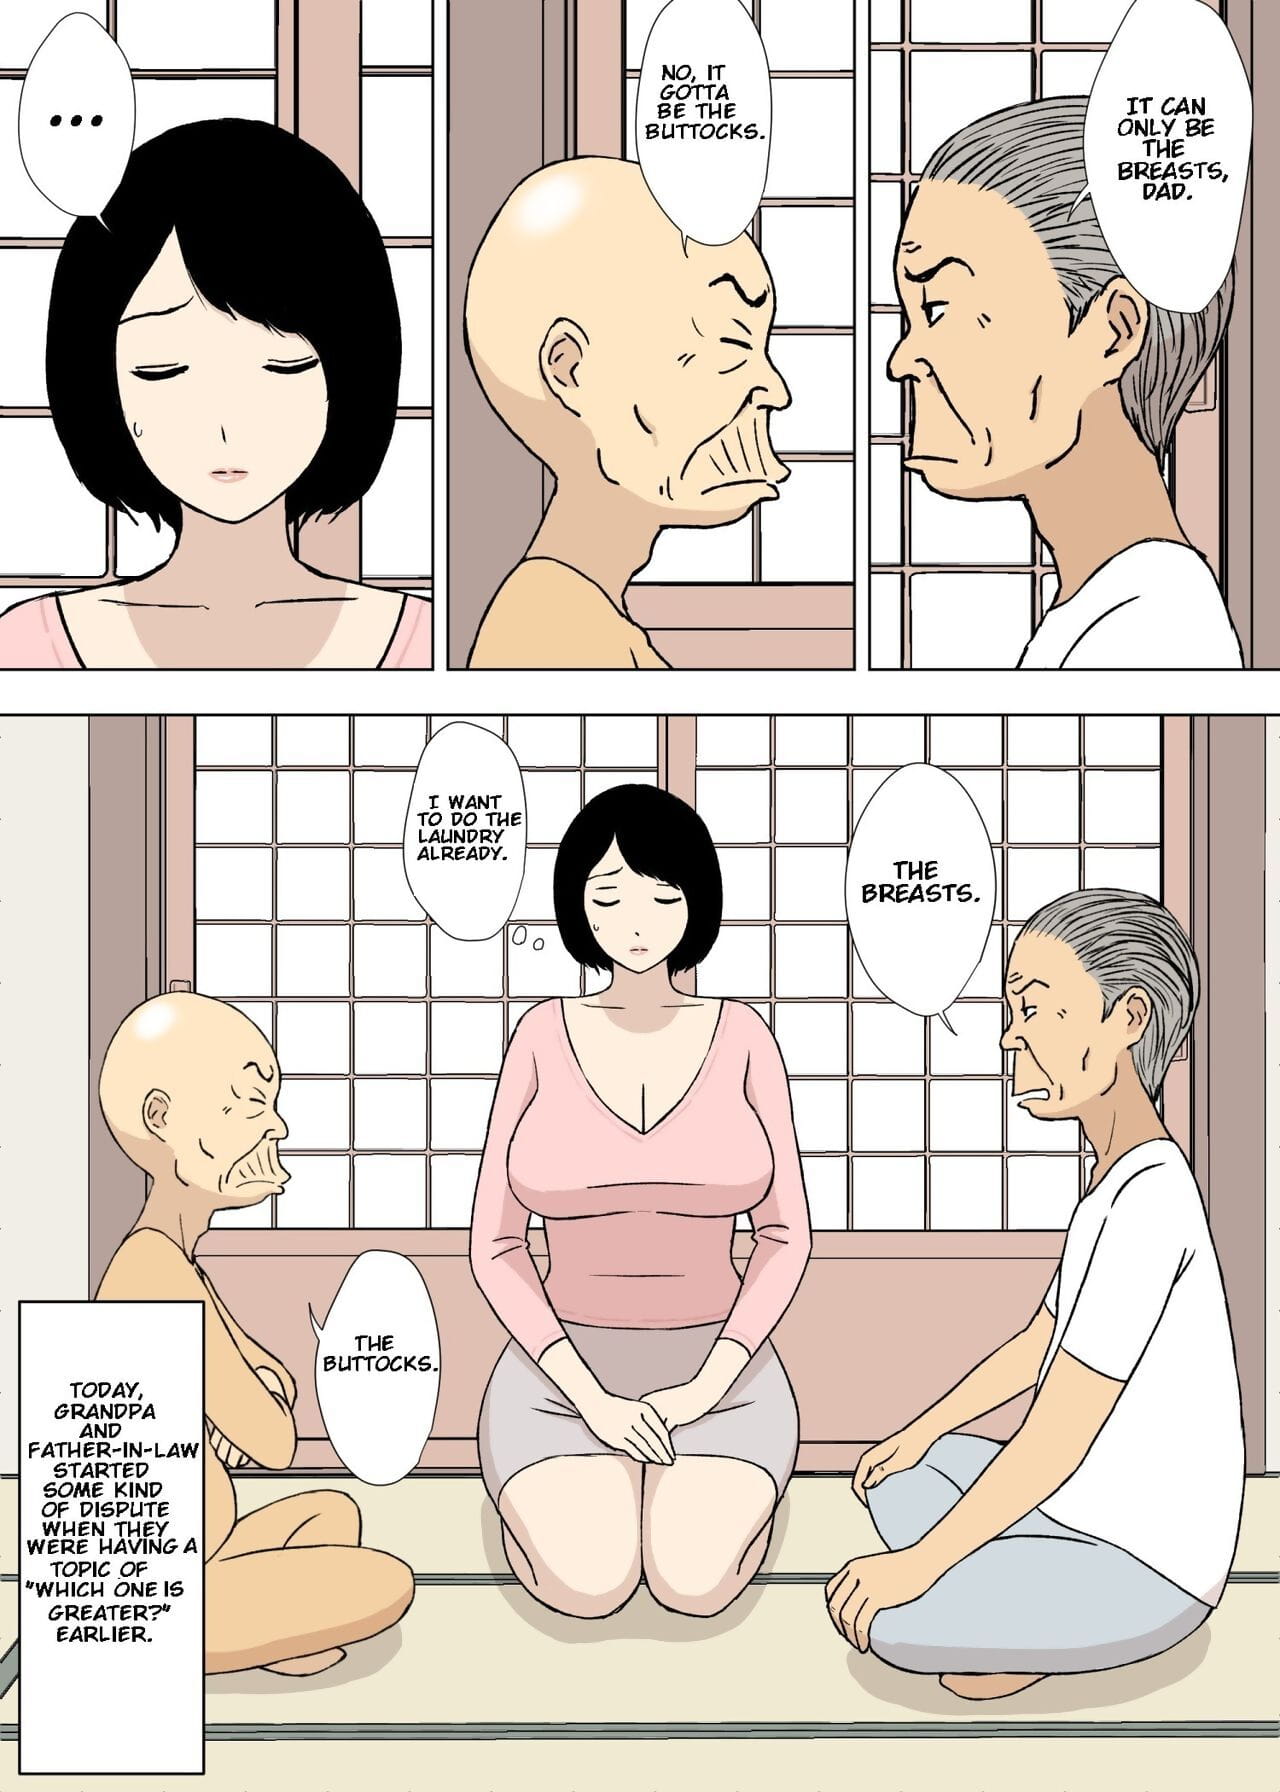 ojiichan phải miyagi phải giri không musuko phải hoạt hình cặp vợ chồng đáng yêu 5 page 1